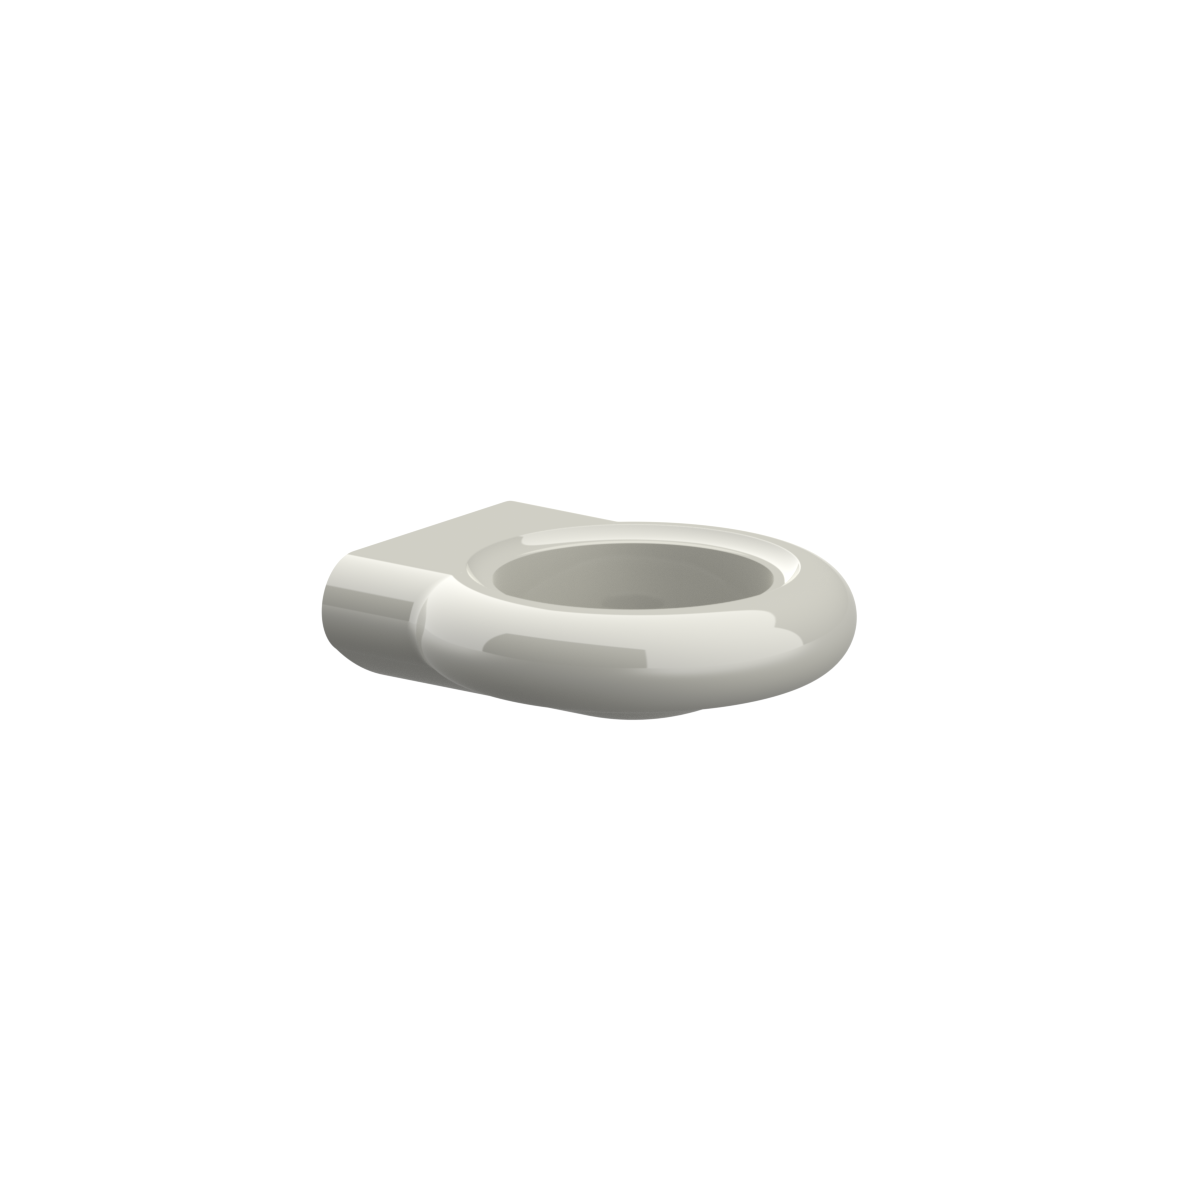 Nylon Care Becherhalter, 125 x 116 x 39 mm, Weiß | 0 | 0 | Weiß | 0925100019